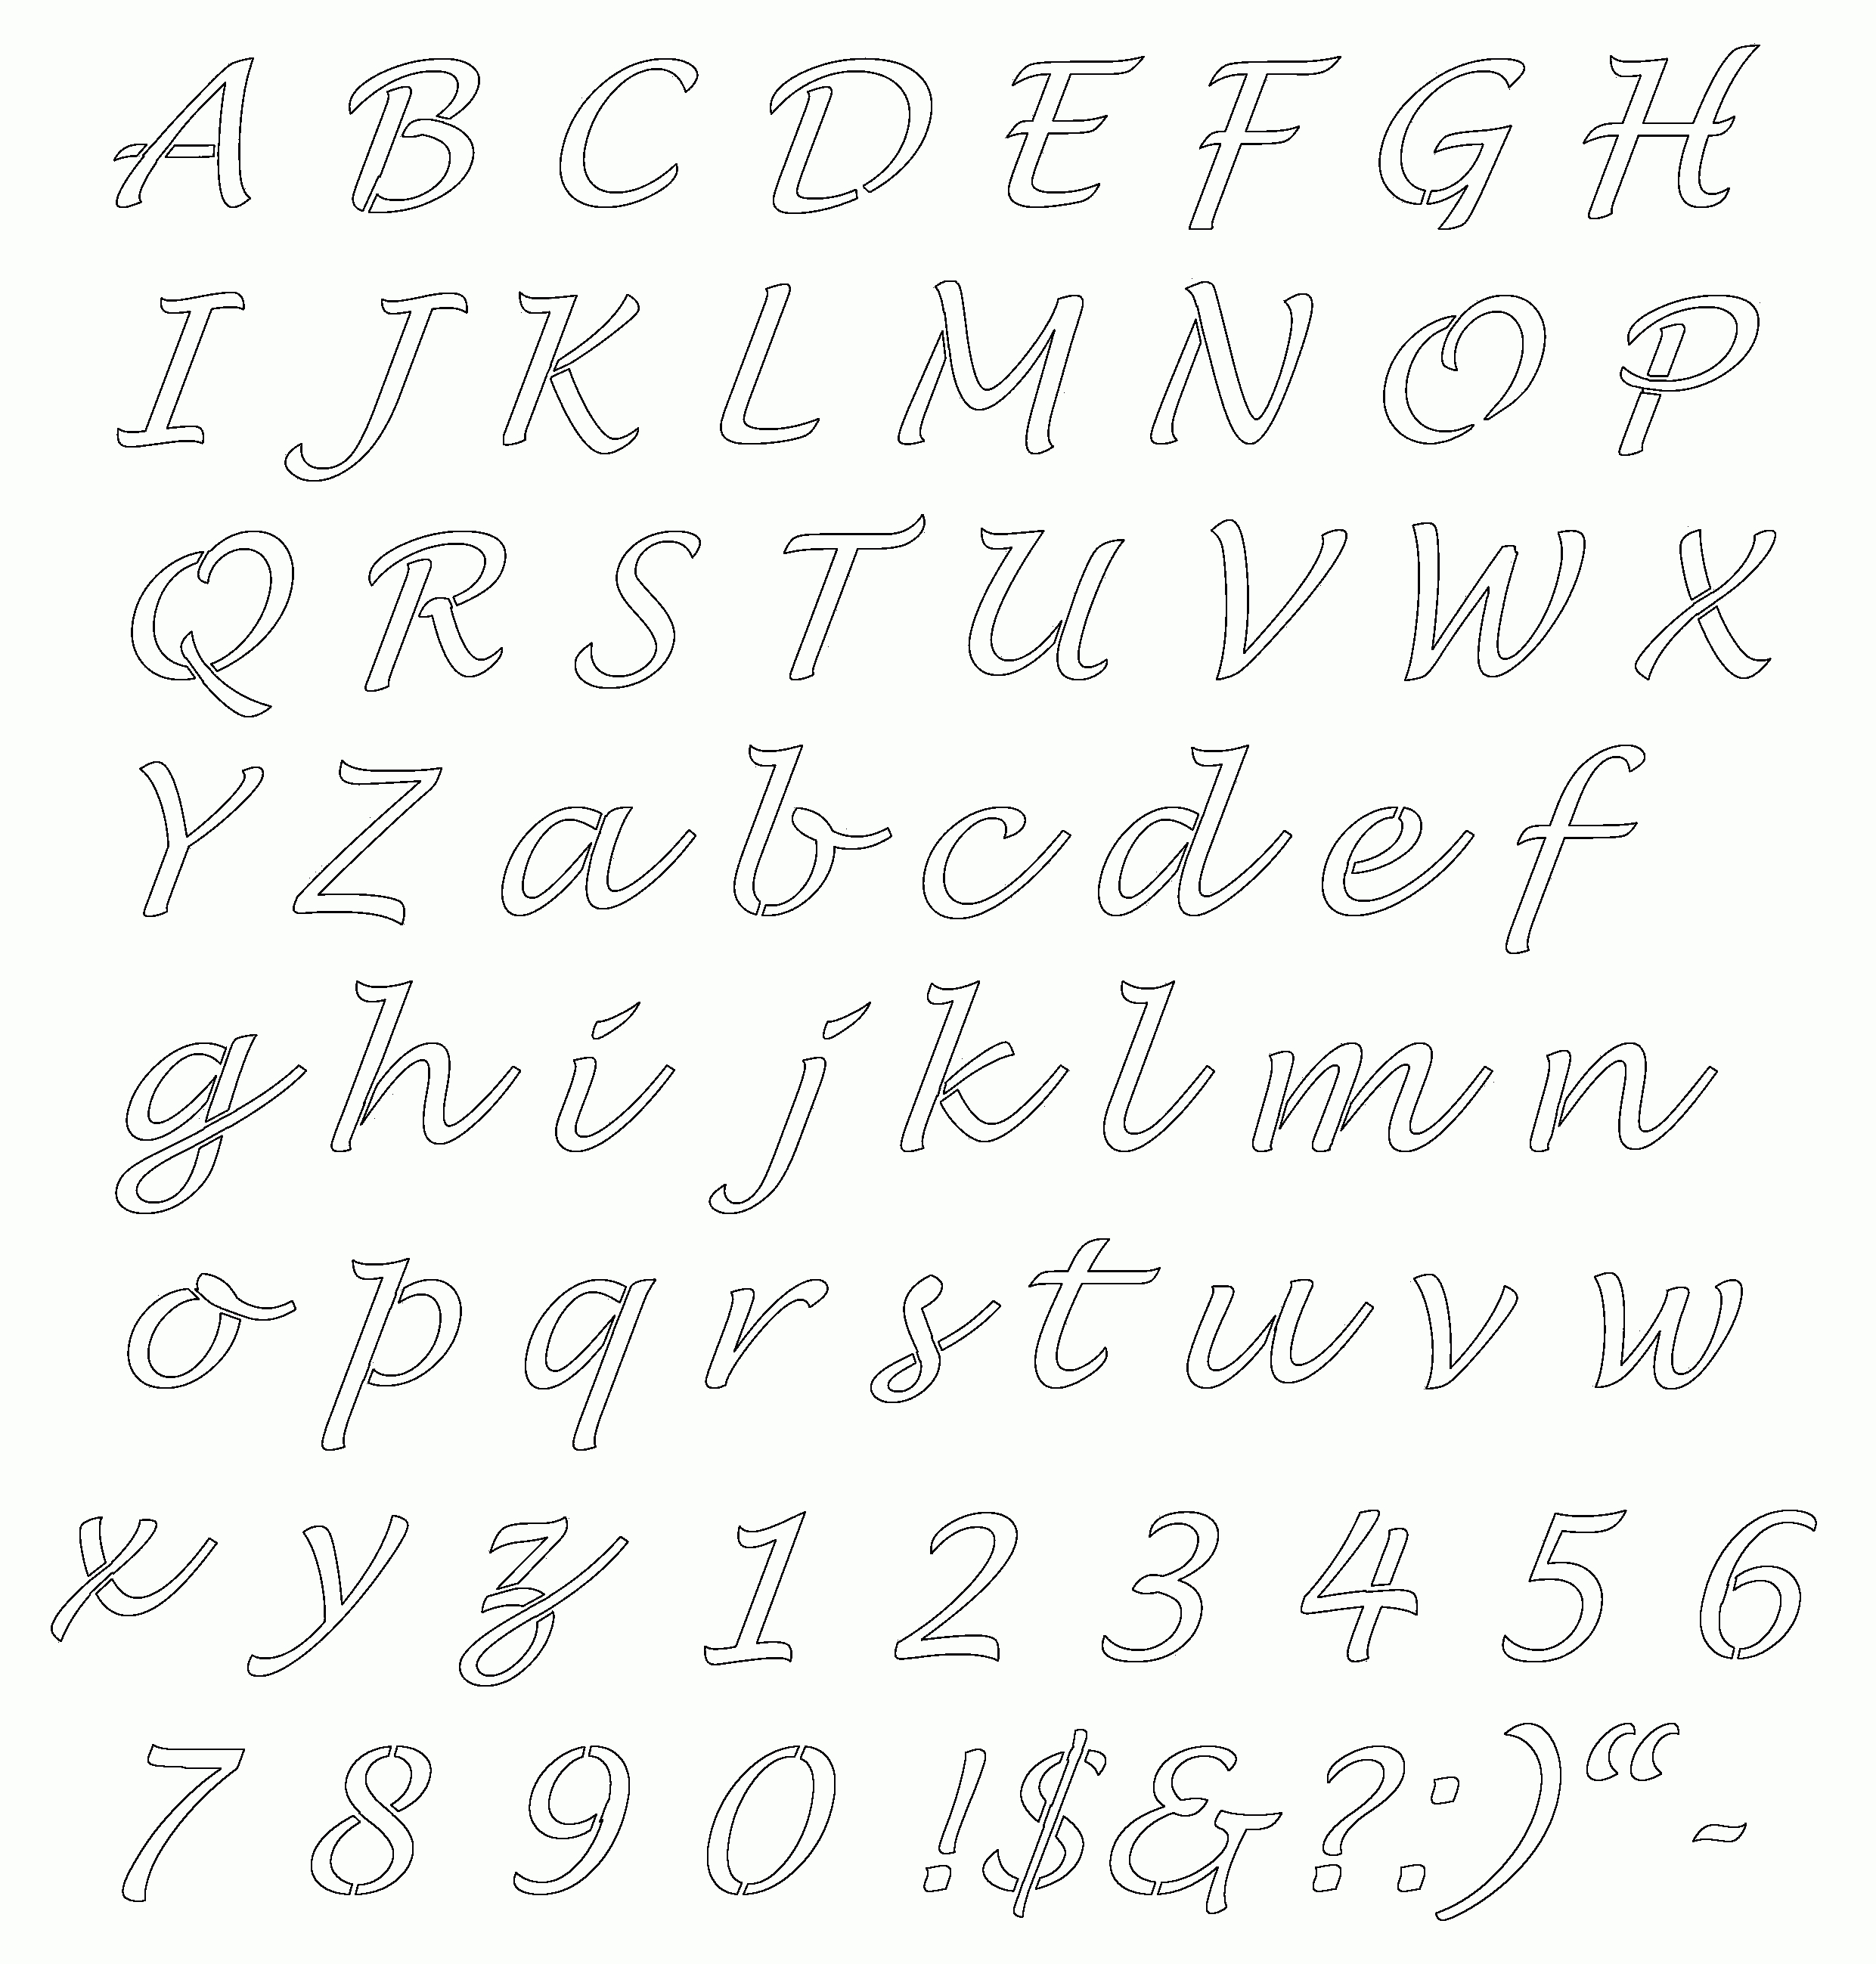 Free Online Alphabet Templates | Stencils Free Printable Alphabetaug - Free Printable Alphabet Templates